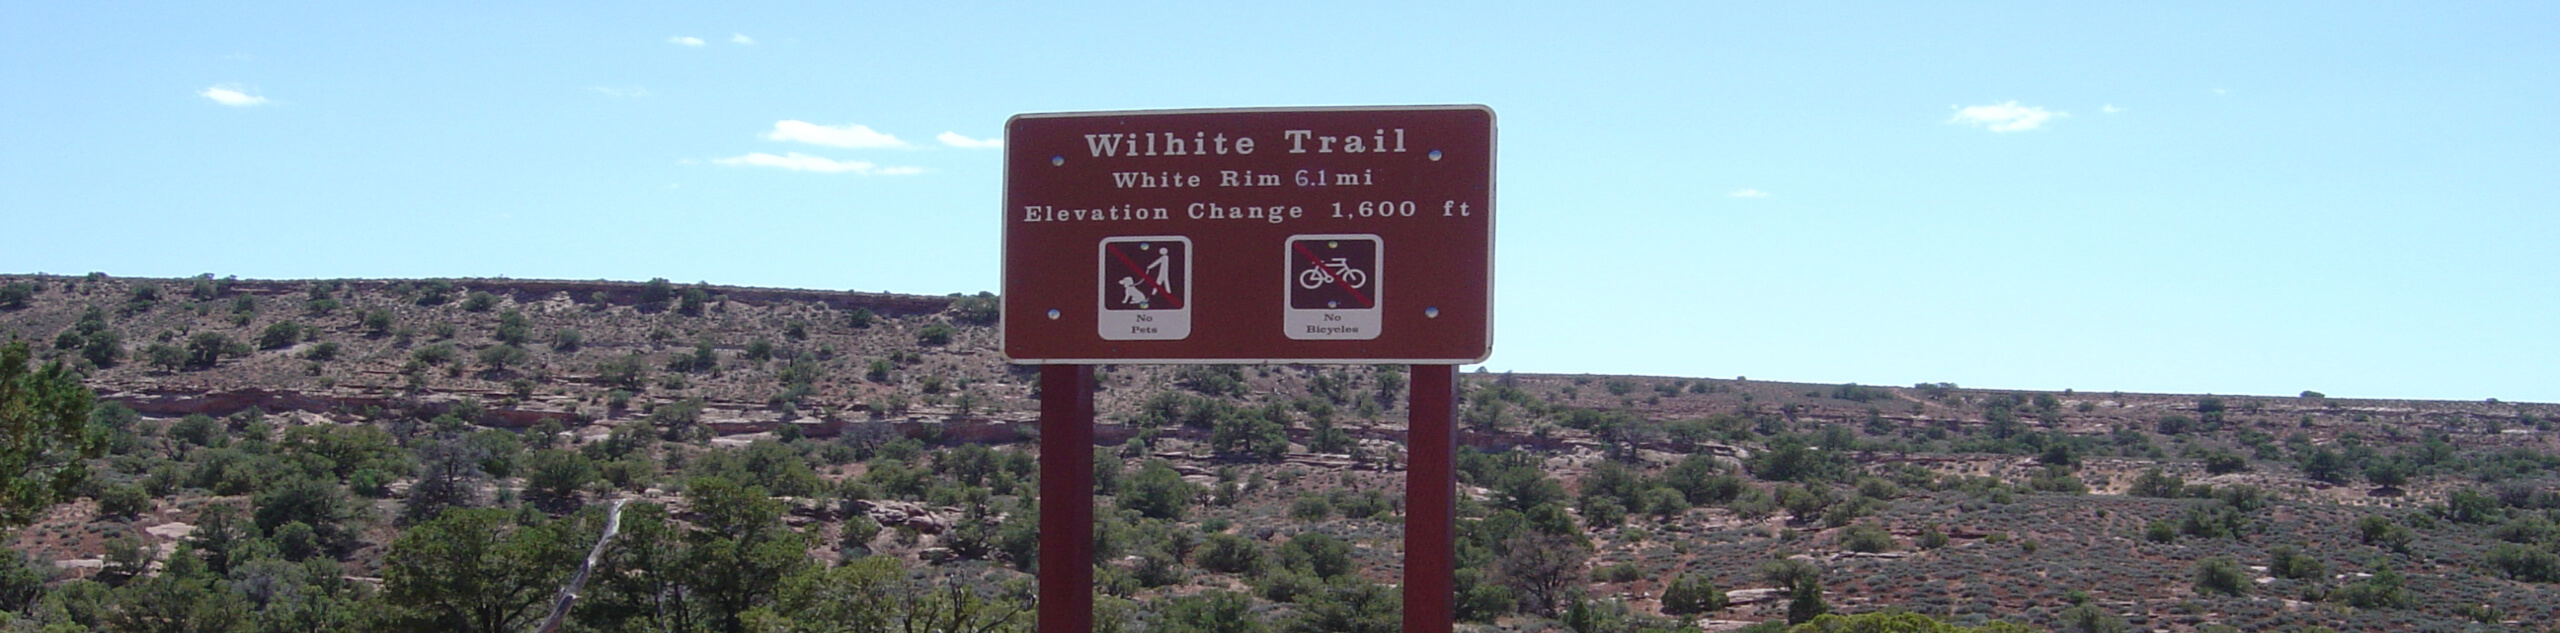 Wilhite Trail